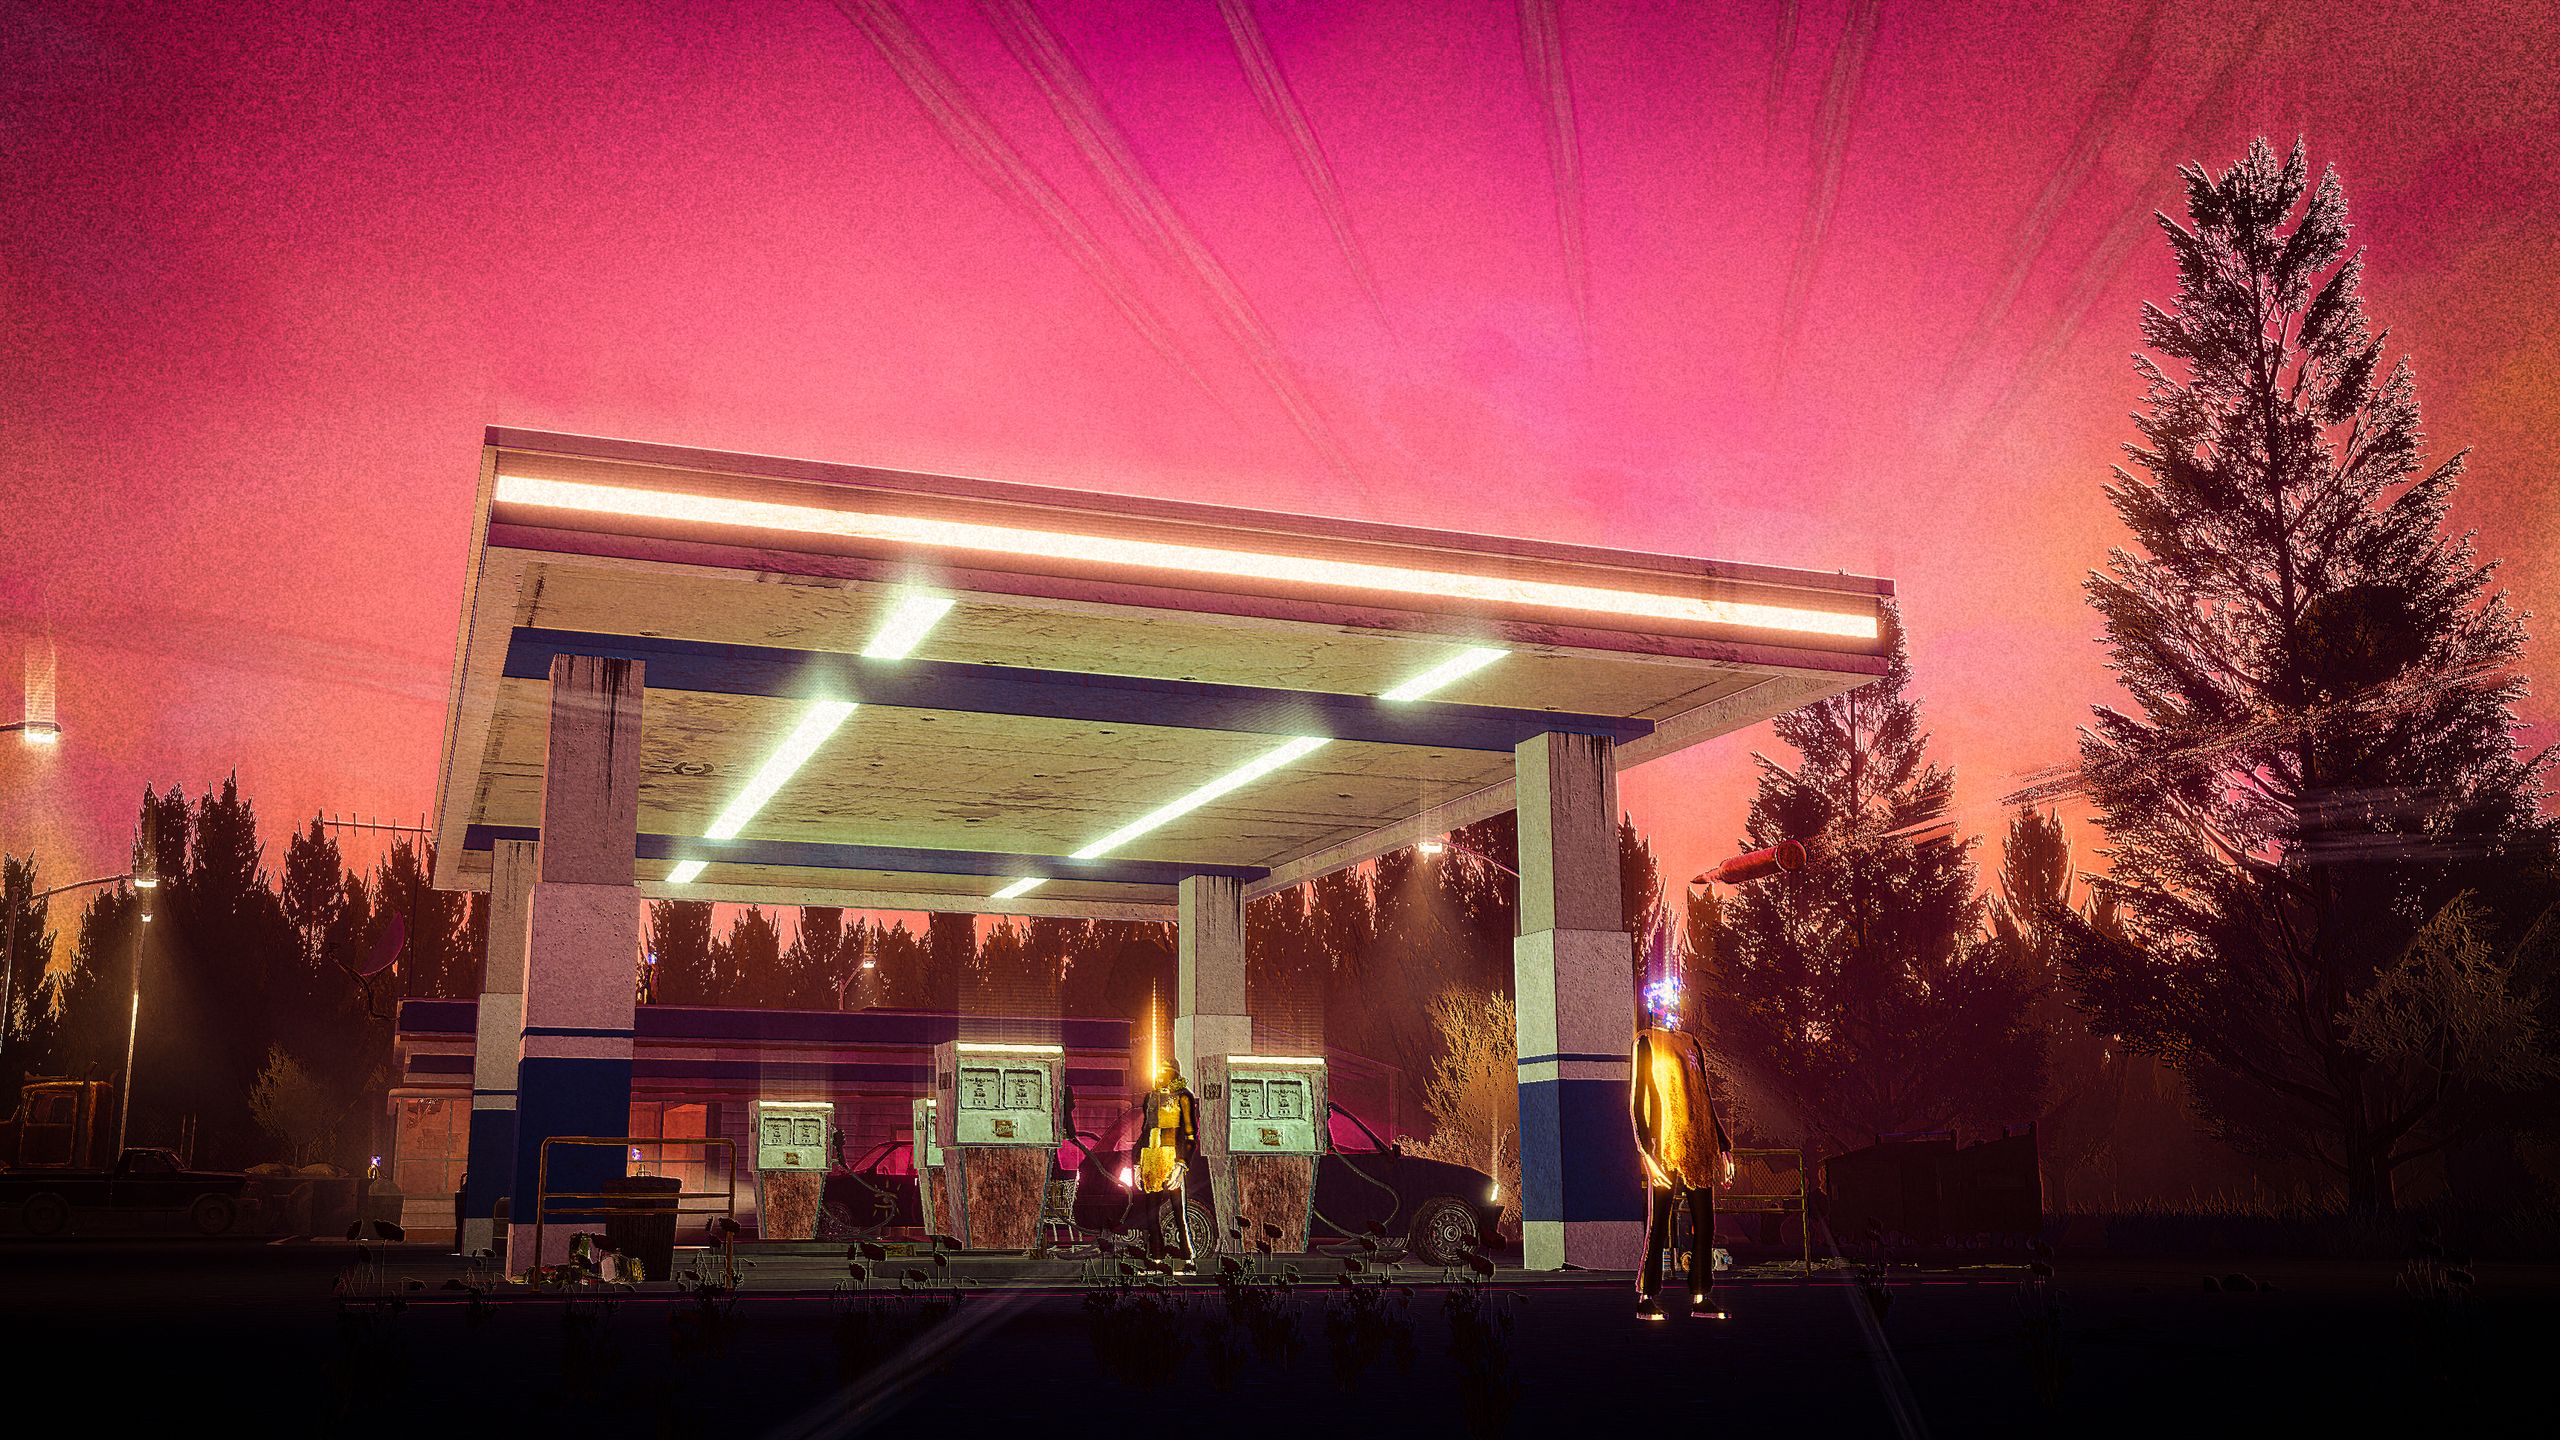 Capture d'écran de Children of the Sun montrant une station-service éclairée par des lumières au néon contre un ciel rosâtre.